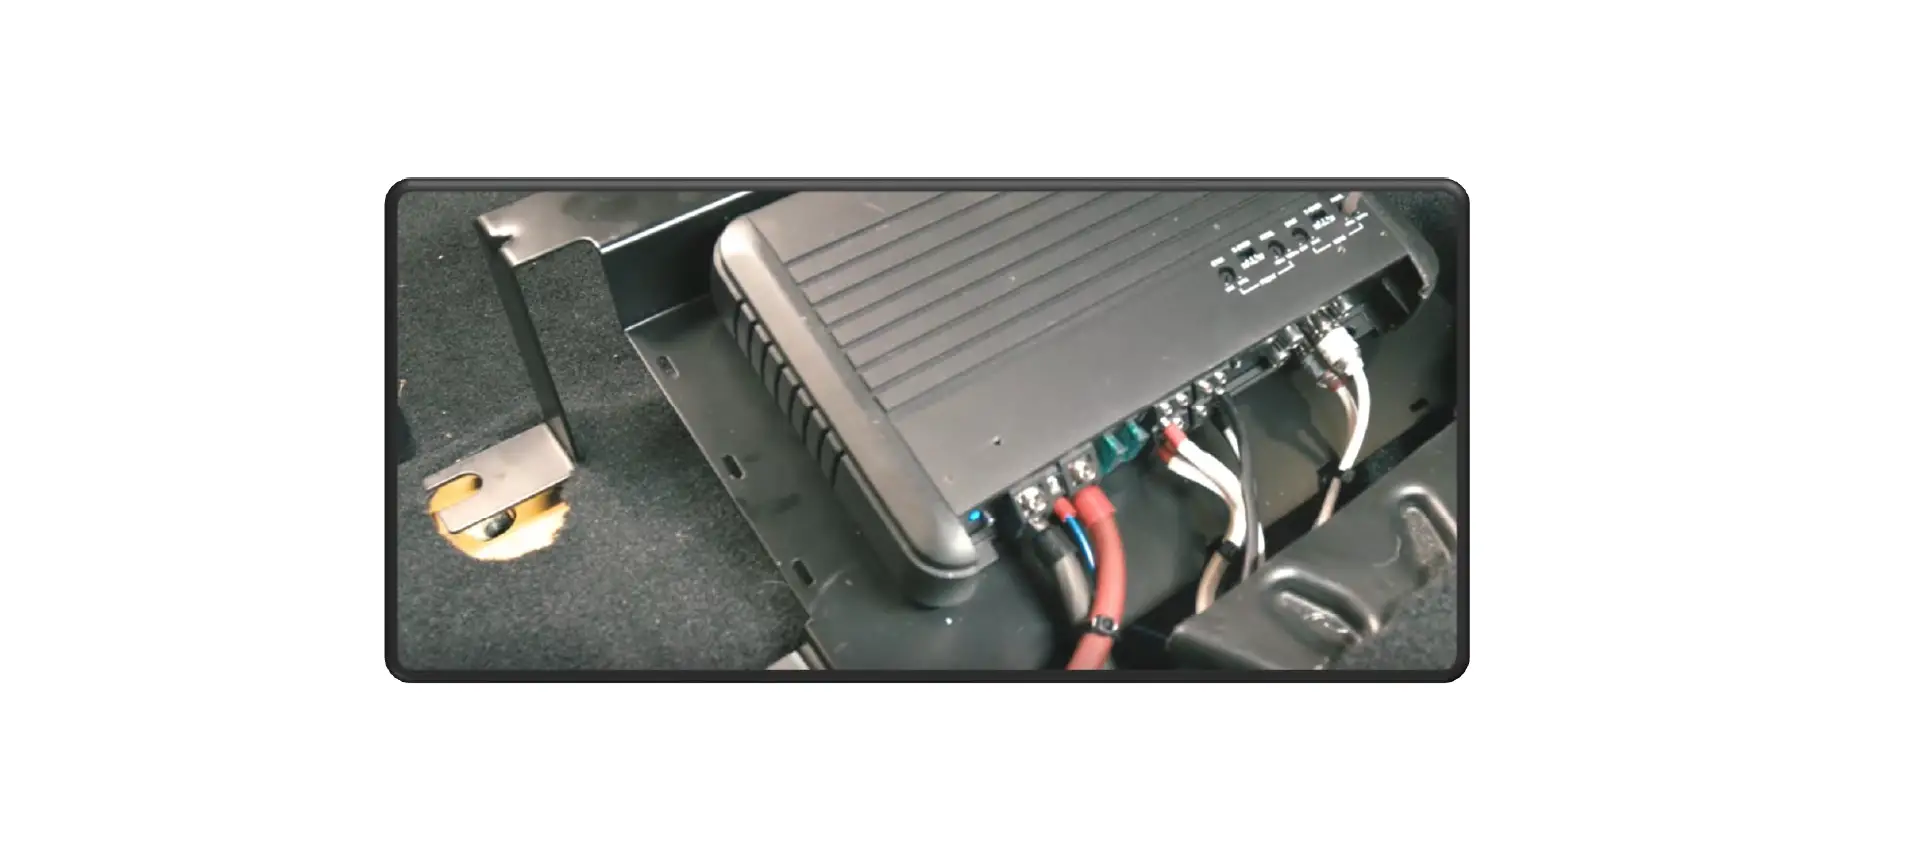 JP-18AMP-2 4 Channel Subwoofer Amplifier kit